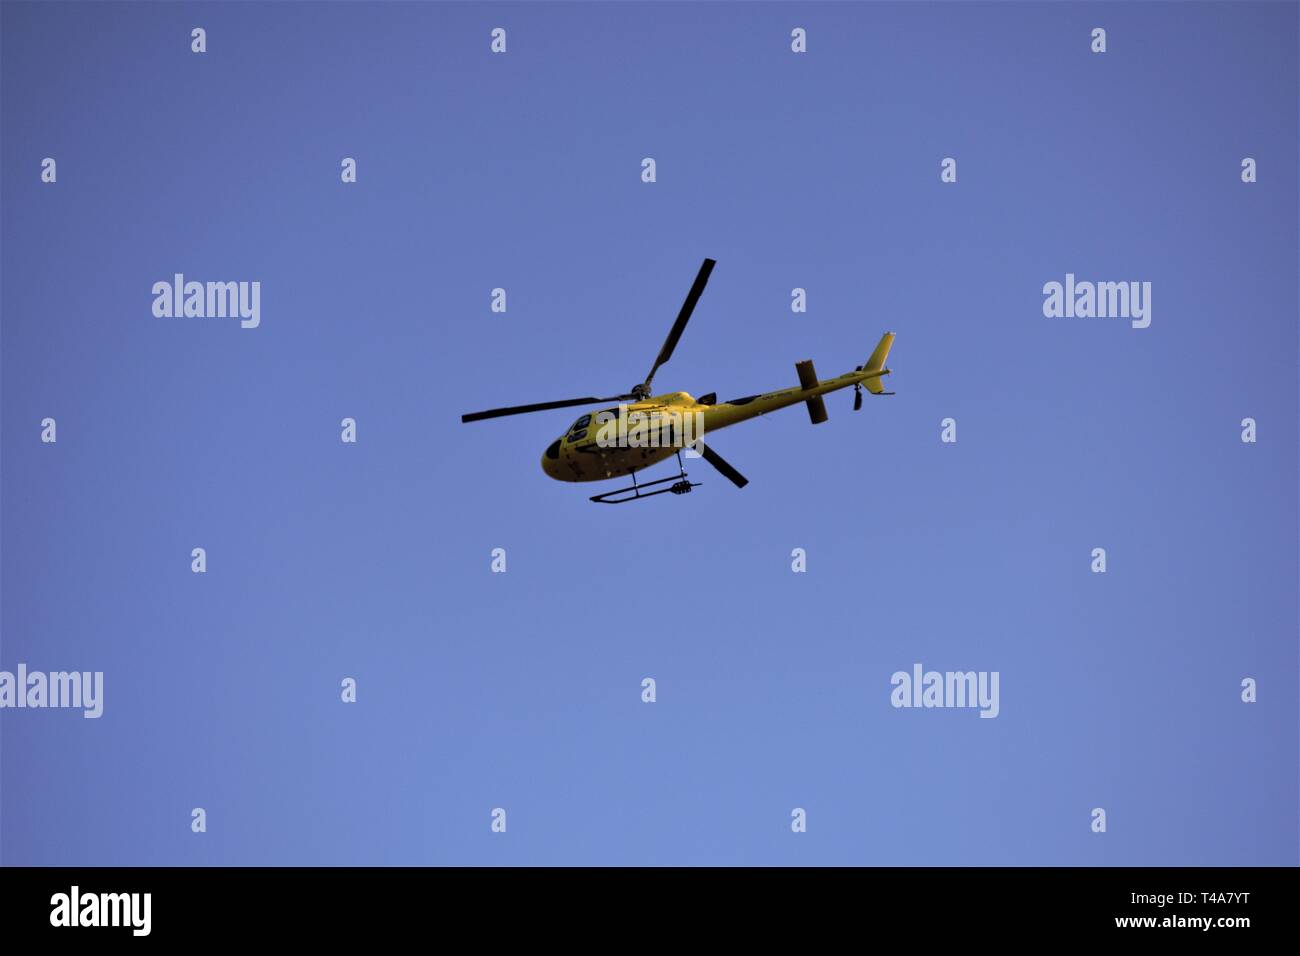 Amarillo FIA World Rally helicóptero en vuelo fotografiada desde el suelo. Contra un cielo azul intenso. Foto de stock